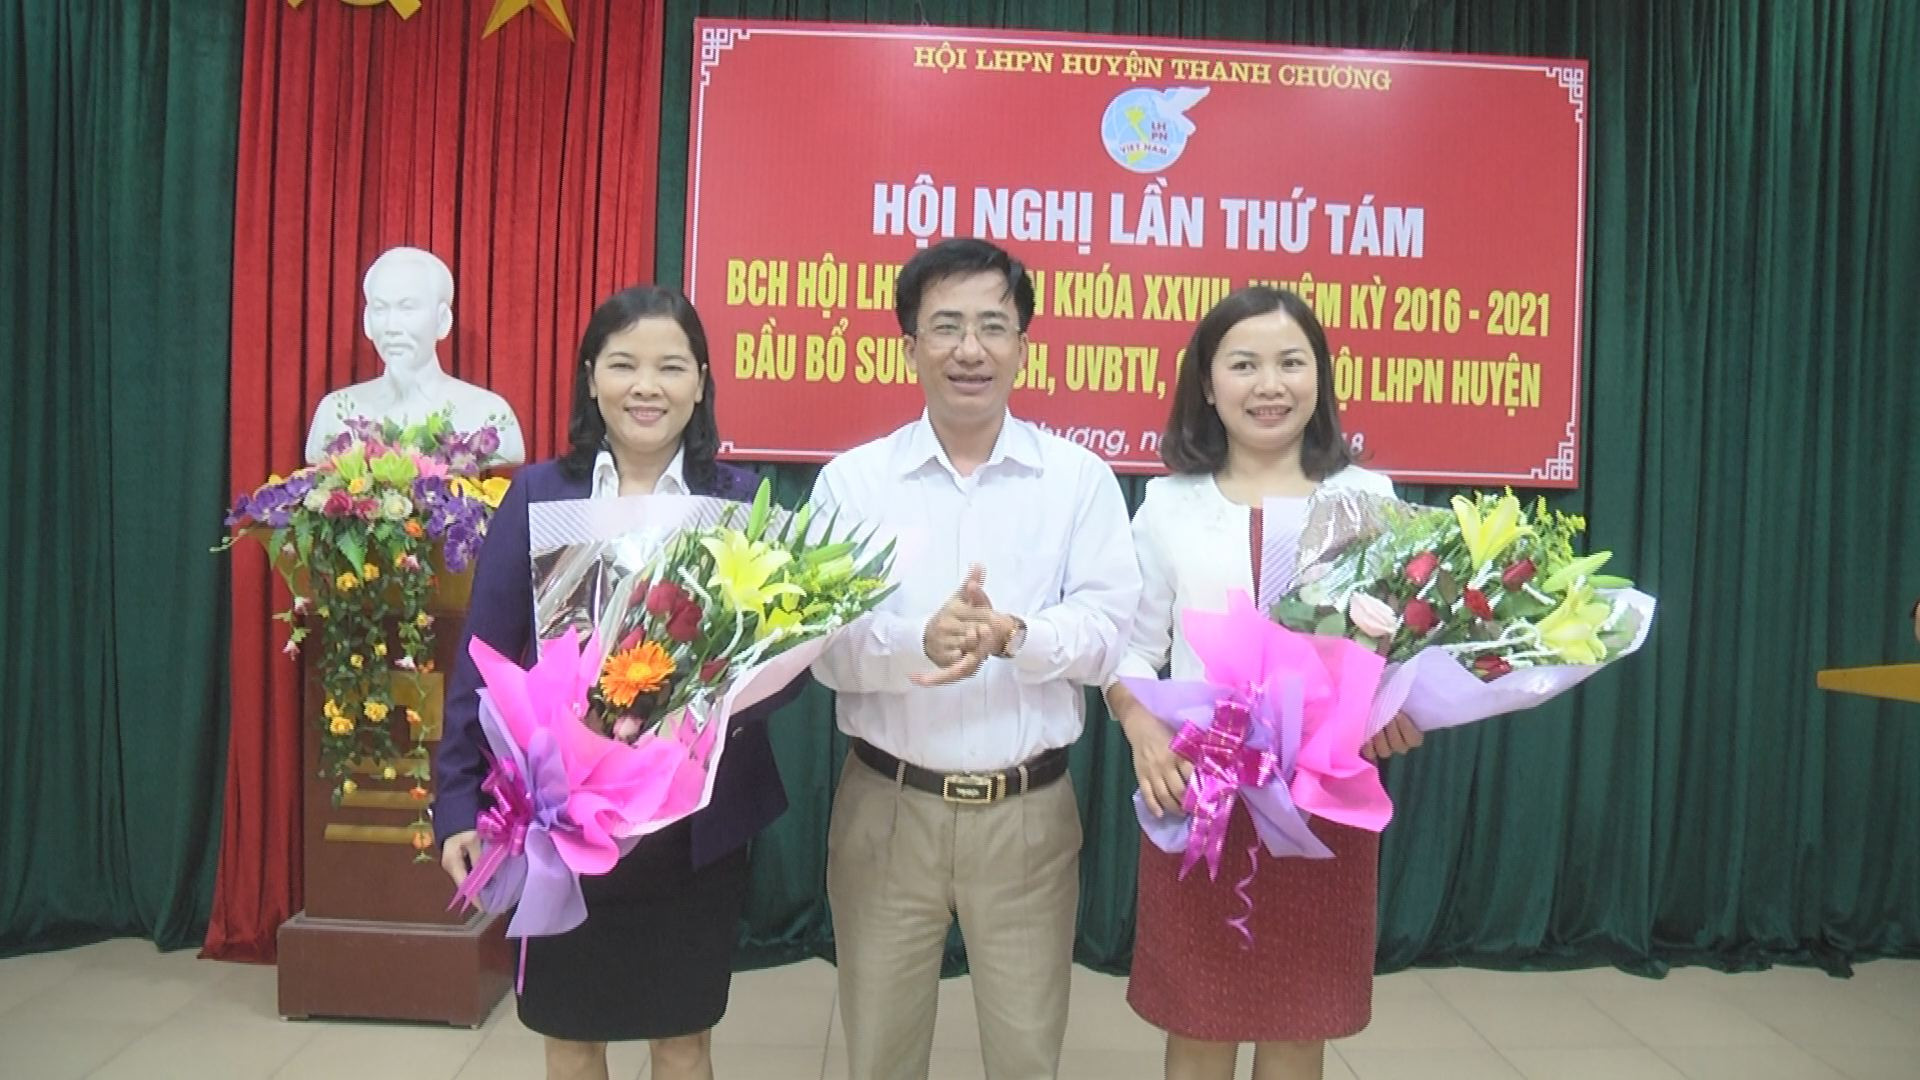 Đồng chí Nguyễn Trọng Anh - Trưởng ban tổ chức Huyện ủy Thanh Chương tặng hoa chúc mừng các đồng chí Đinh Thị Hân và Nguyễn Thị Phương Mai.